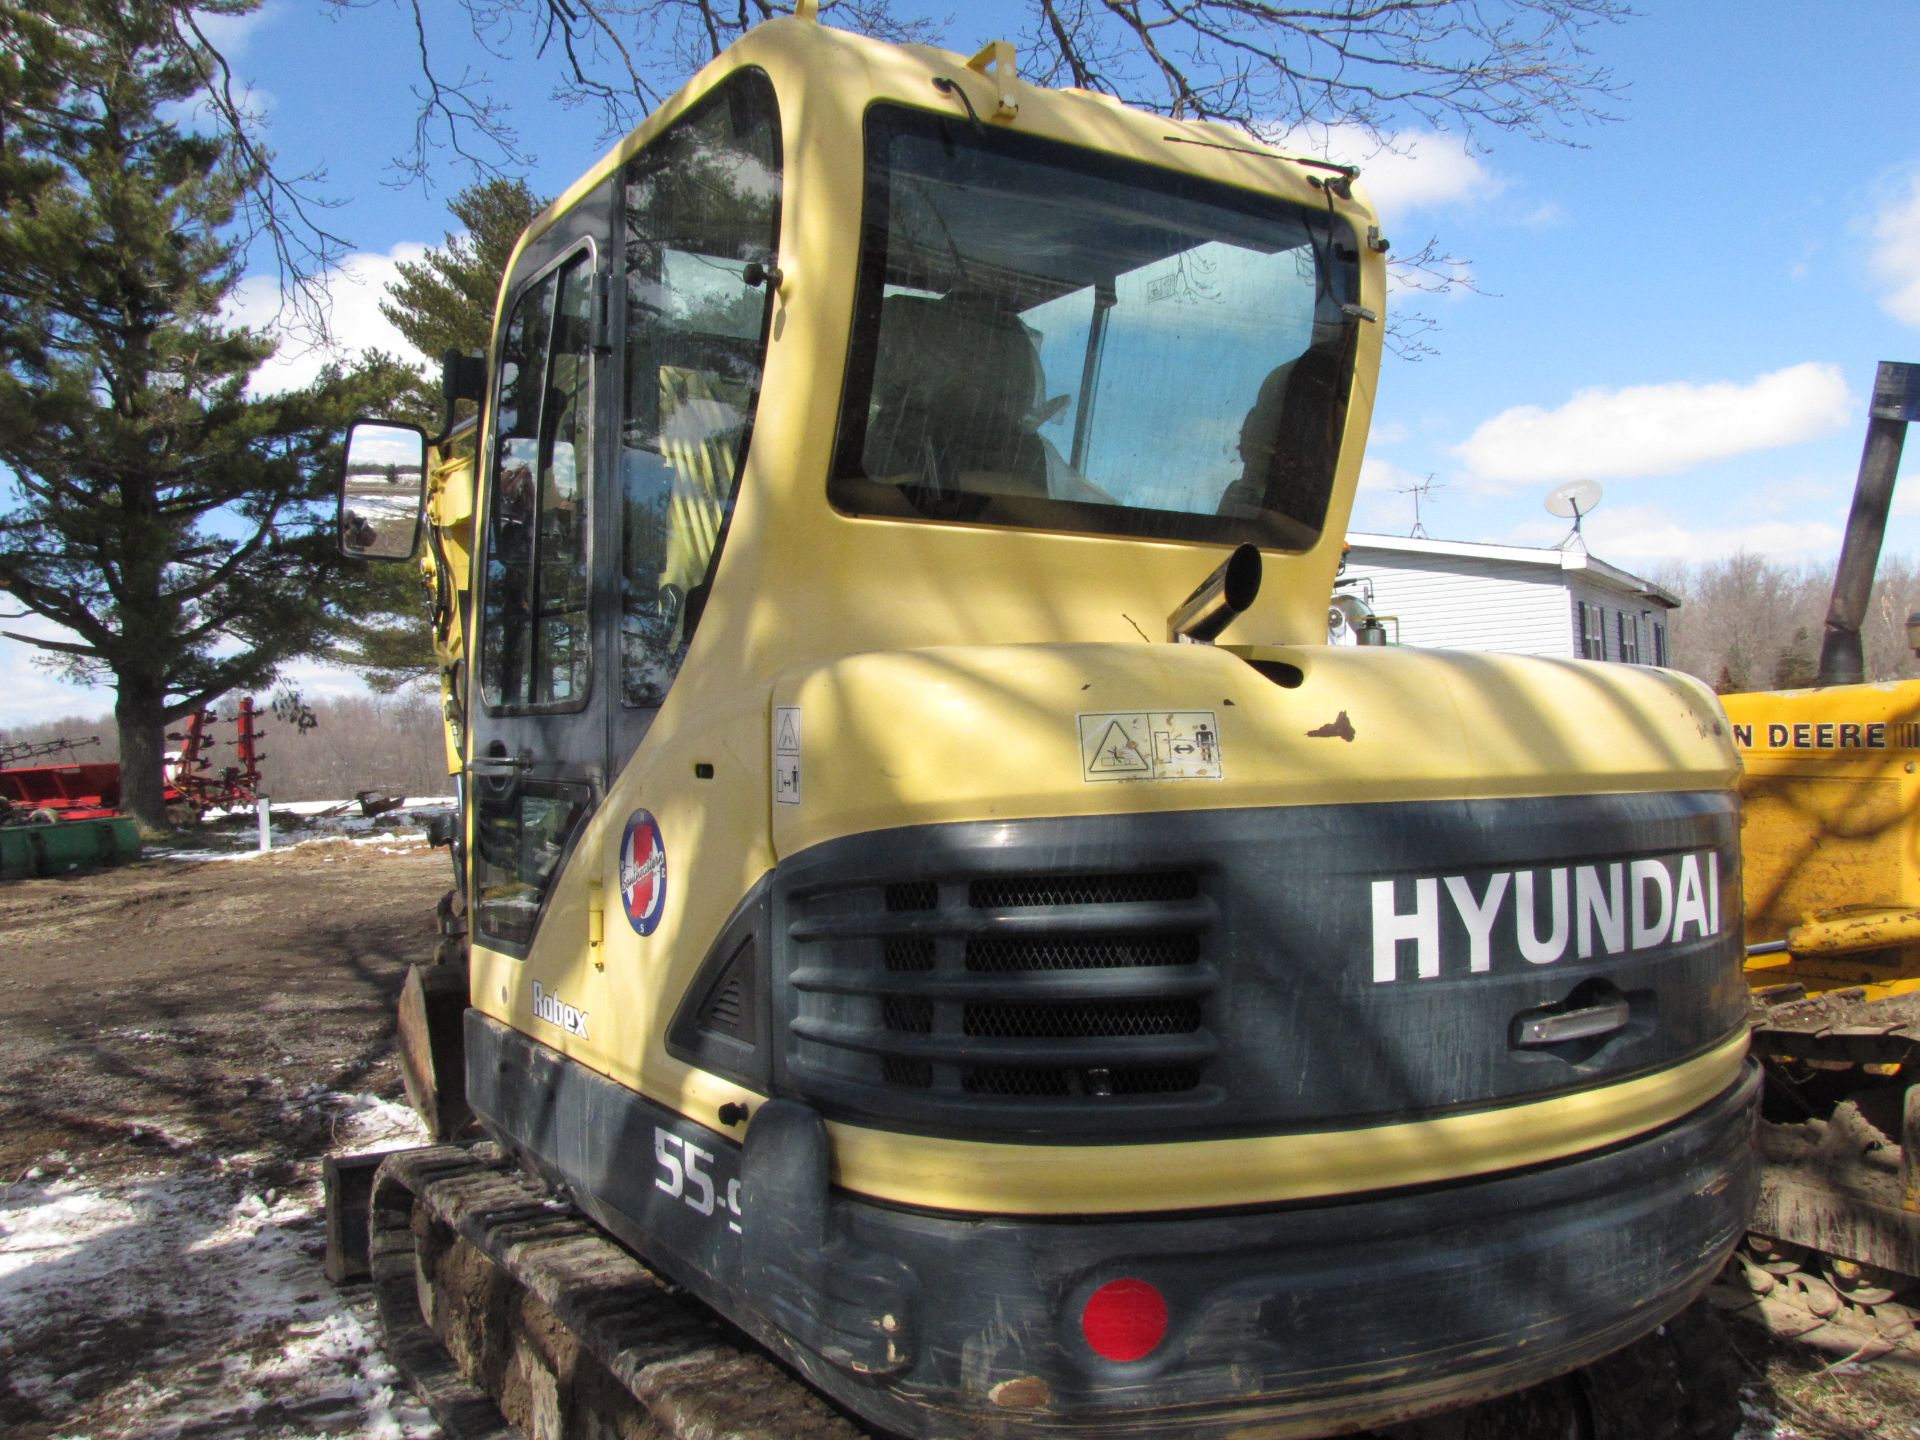 Hyundai 55-9 mini excavator - Image 17 of 42